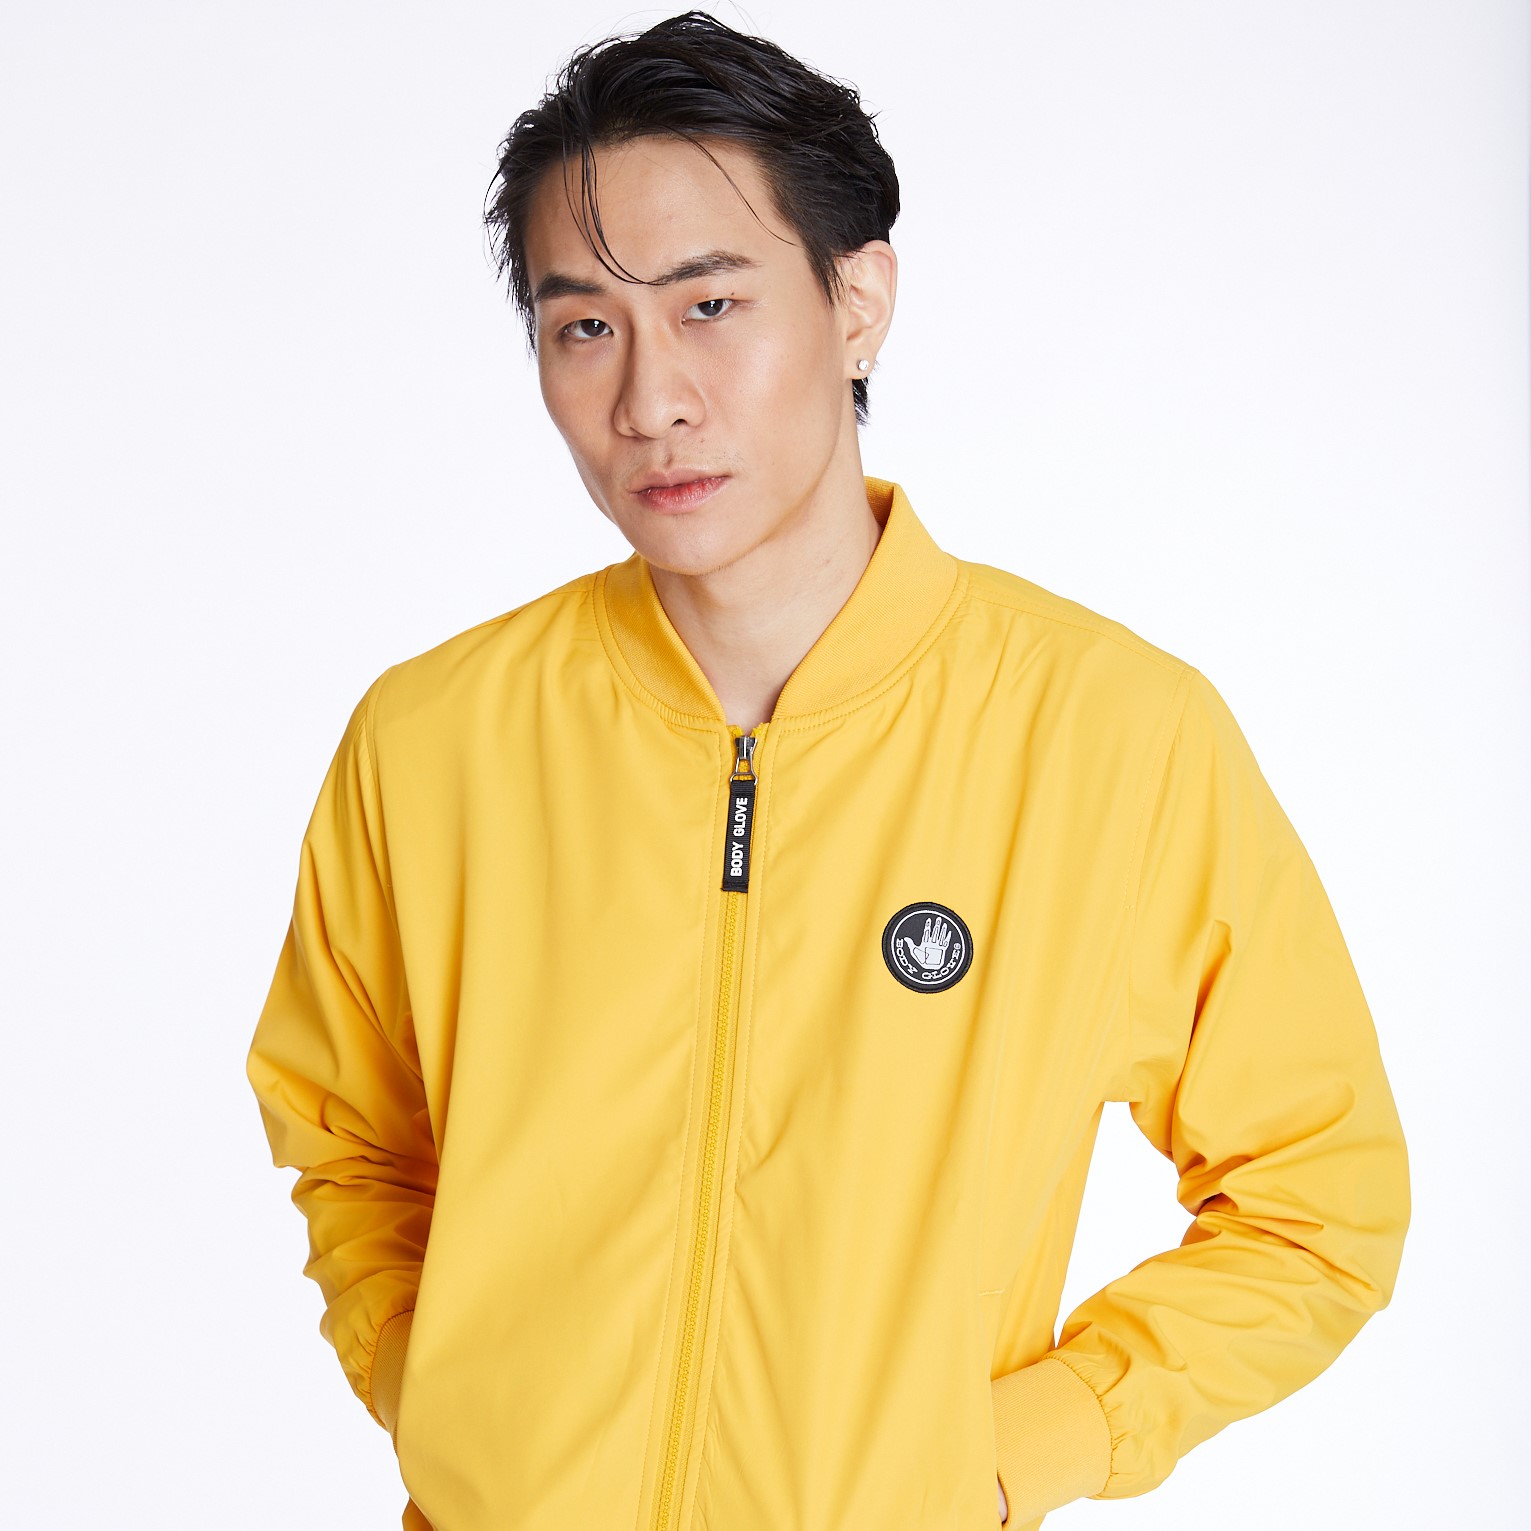 BODY GLOVE Men's Basic Jacket แจ็กเก็ต ผู้ชาย สีเหลือง-04